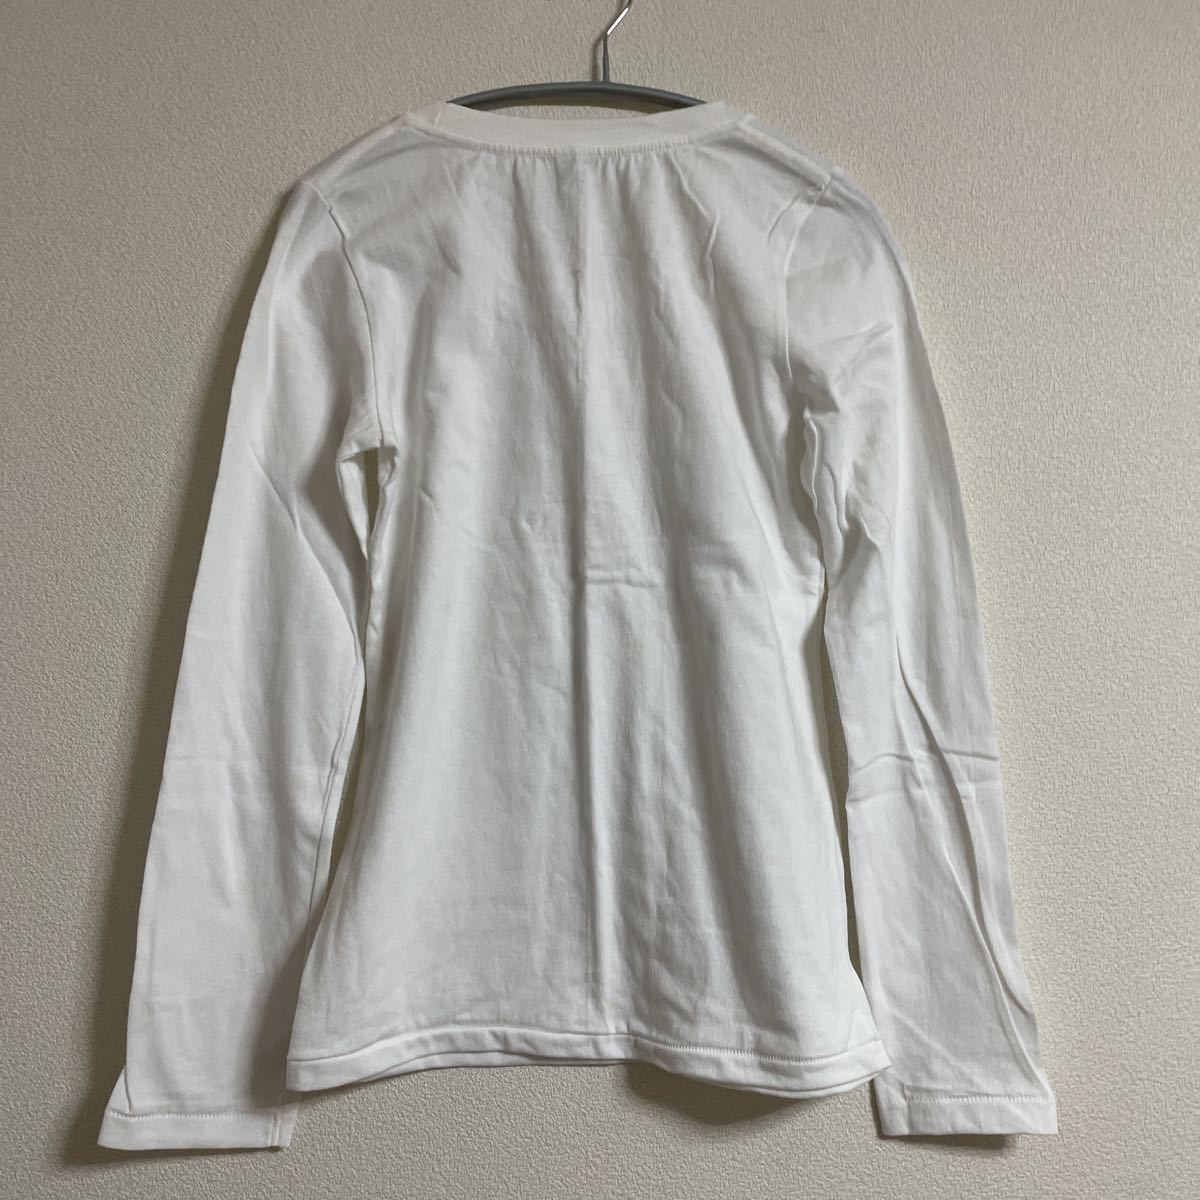 難有新品 長袖Tシャツ トップス M ホワイト白 未使用 インナー 綿100% コットン 無地_画像3